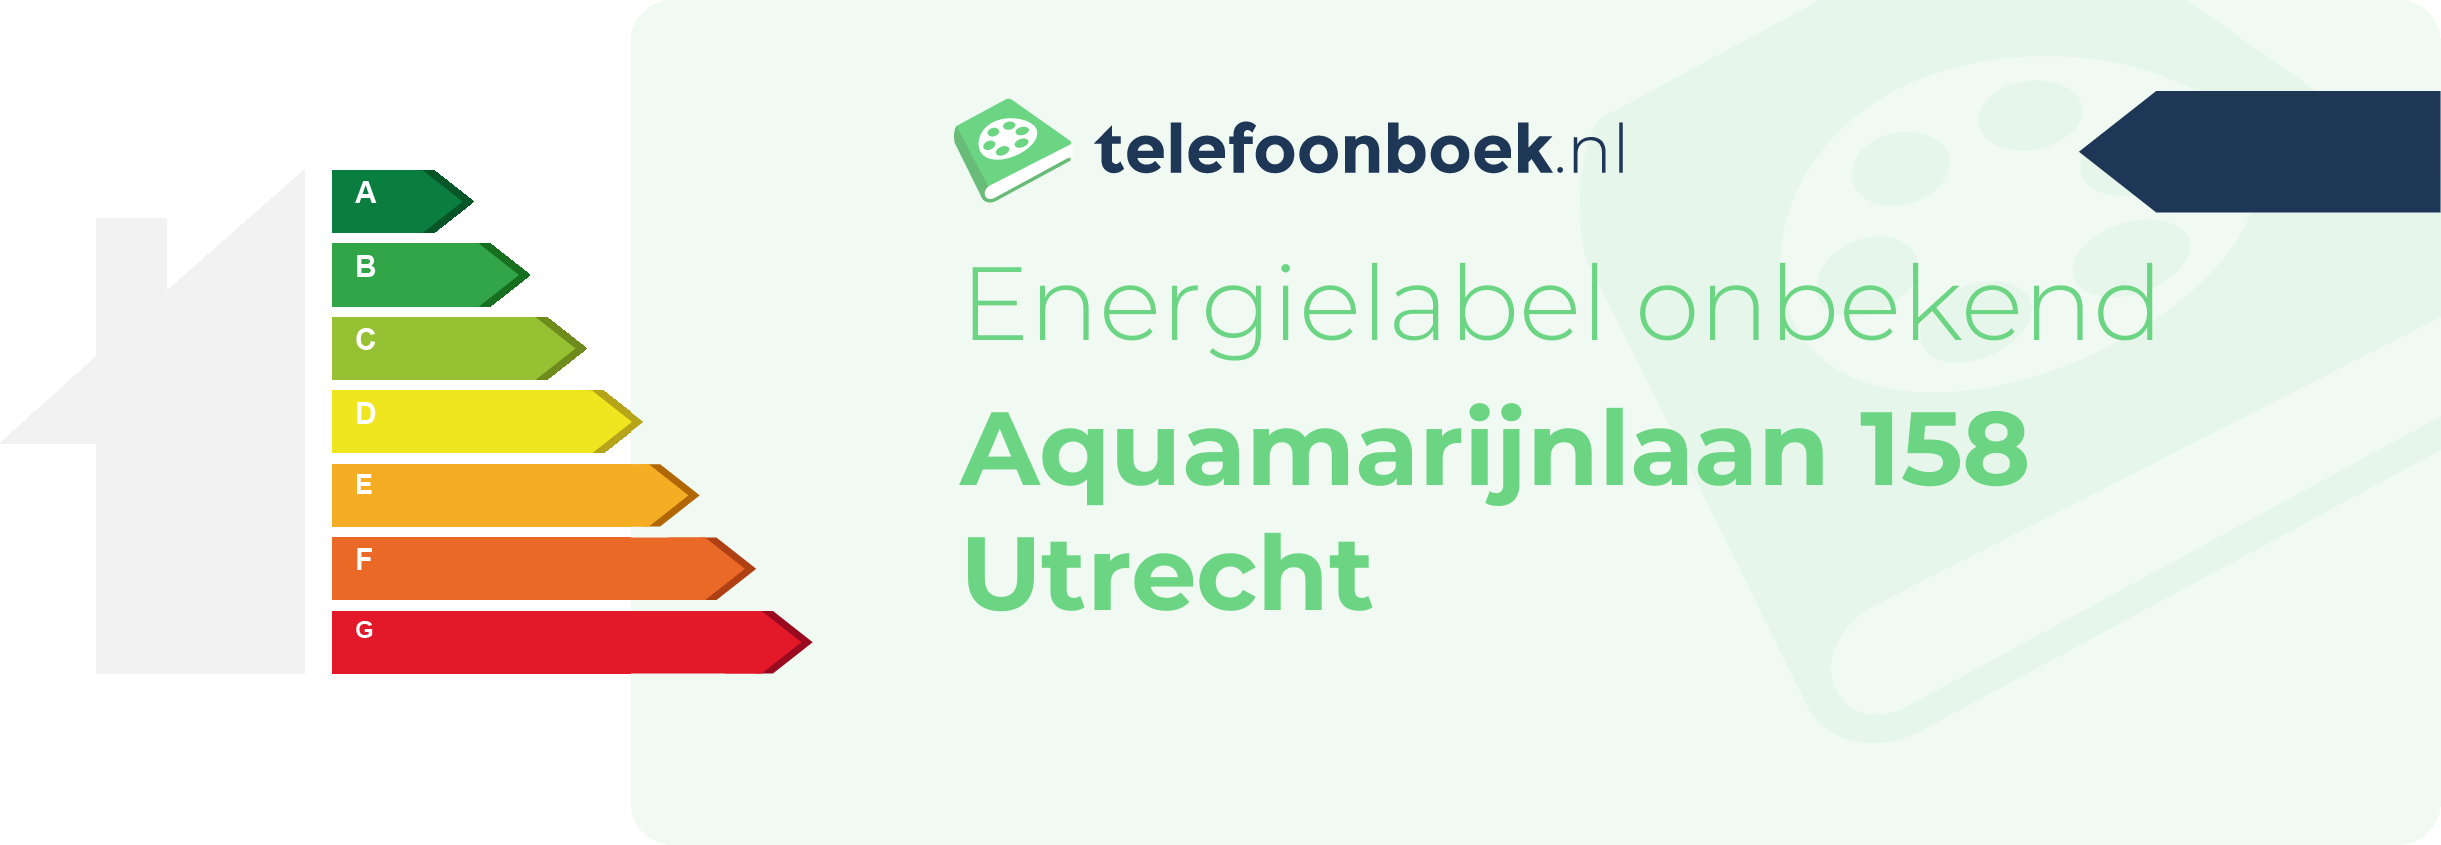 Energielabel Aquamarijnlaan 158 Utrecht